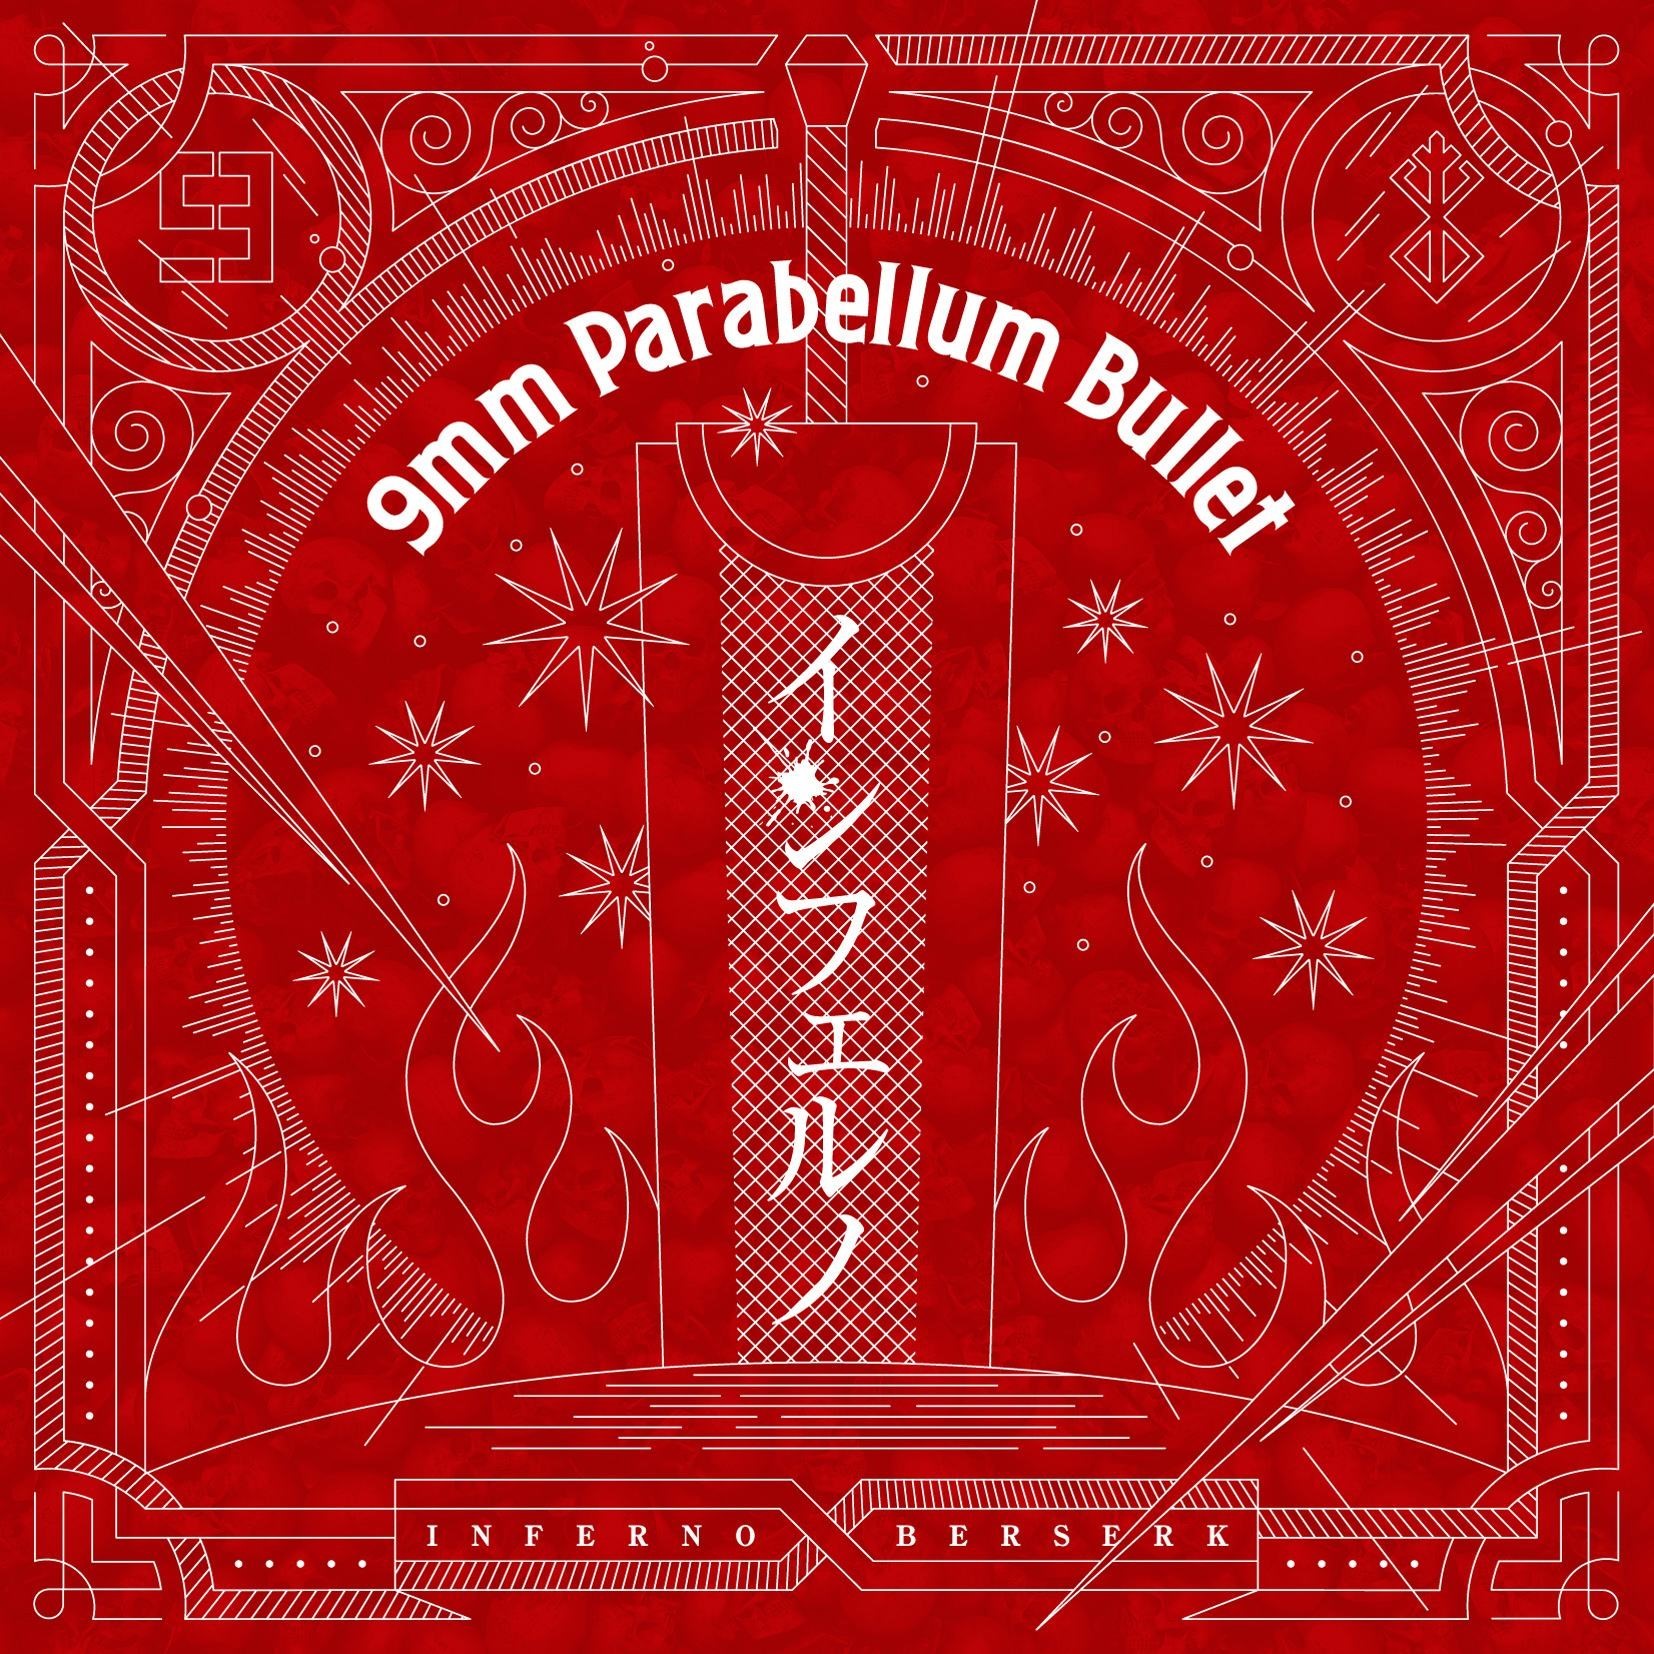 9mm Parabellum Bullet 7月にシングルリリース決定 アニメ ベルセルク のopテーマに Spice エンタメ特化型情報メディア スパイス